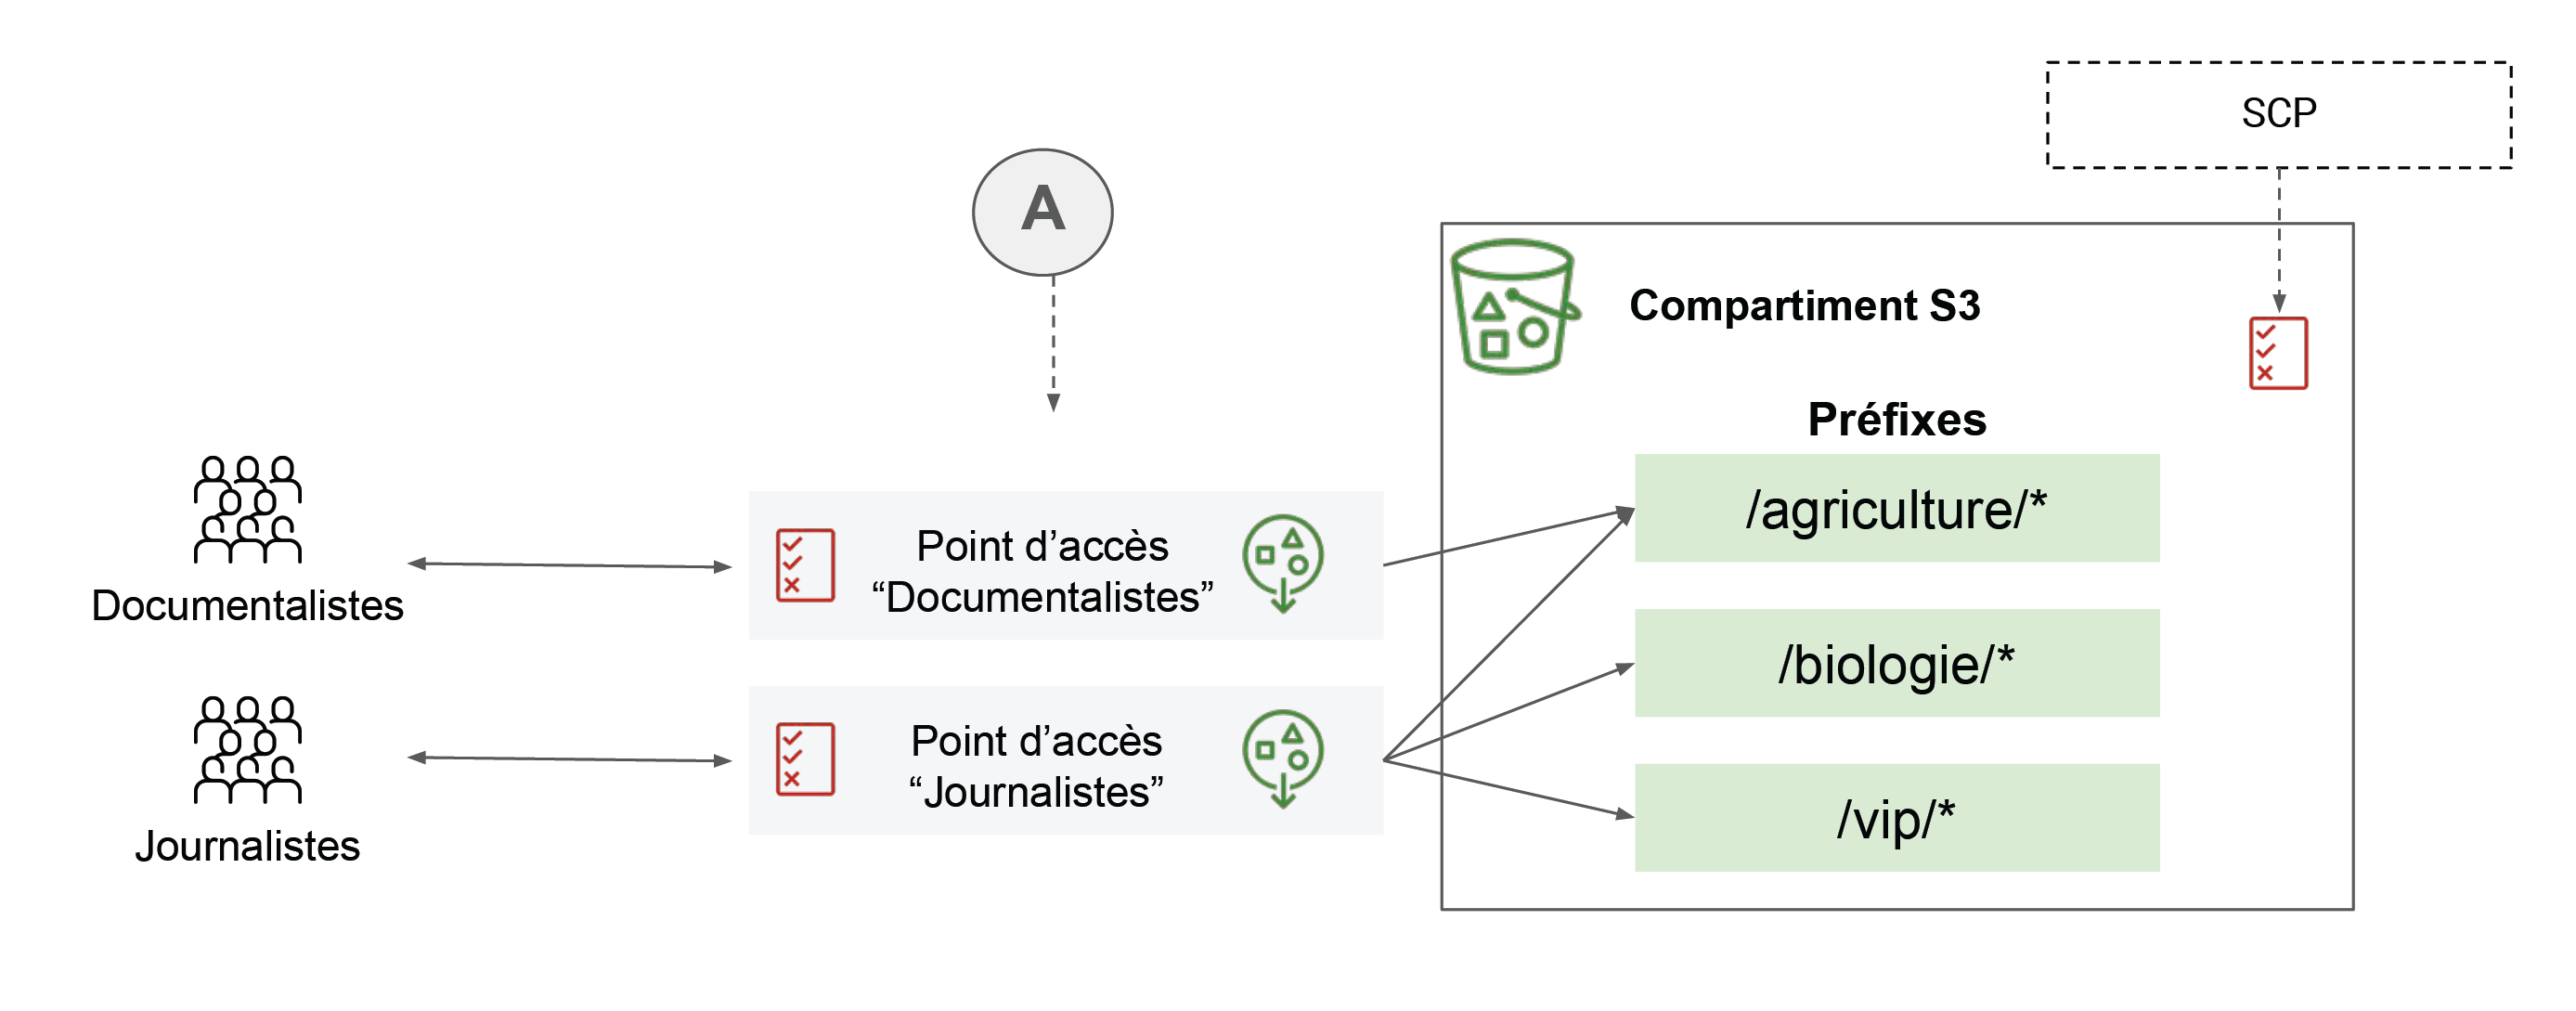 Les flèches relient les documentalistes et les journalistes avec les point d’accès correspondantes (A), qui, à leur tour, sont liées avec des préfixes dans le compartiment S3.